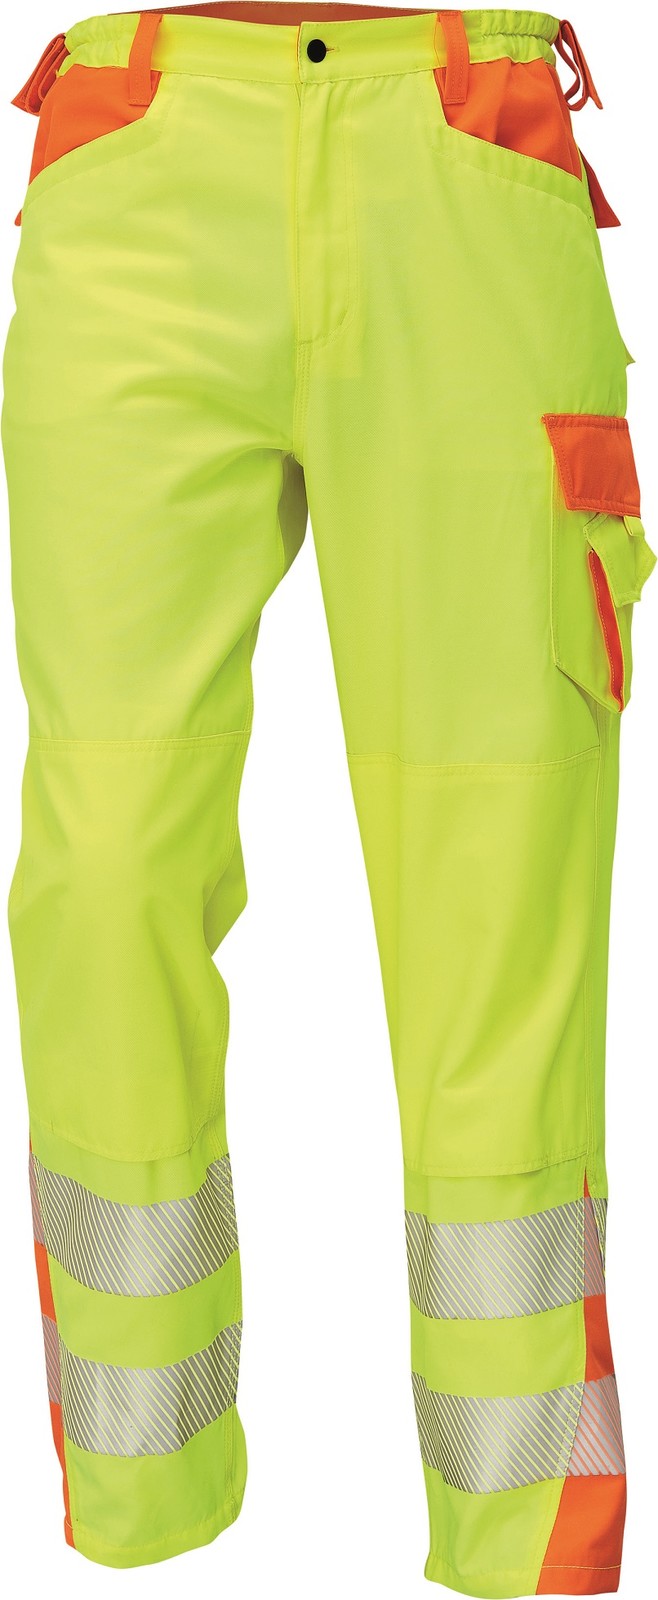 Reflexné pracovné nohavice Cerva Latton - veľkosť: 48, farba: žltá/oranžová